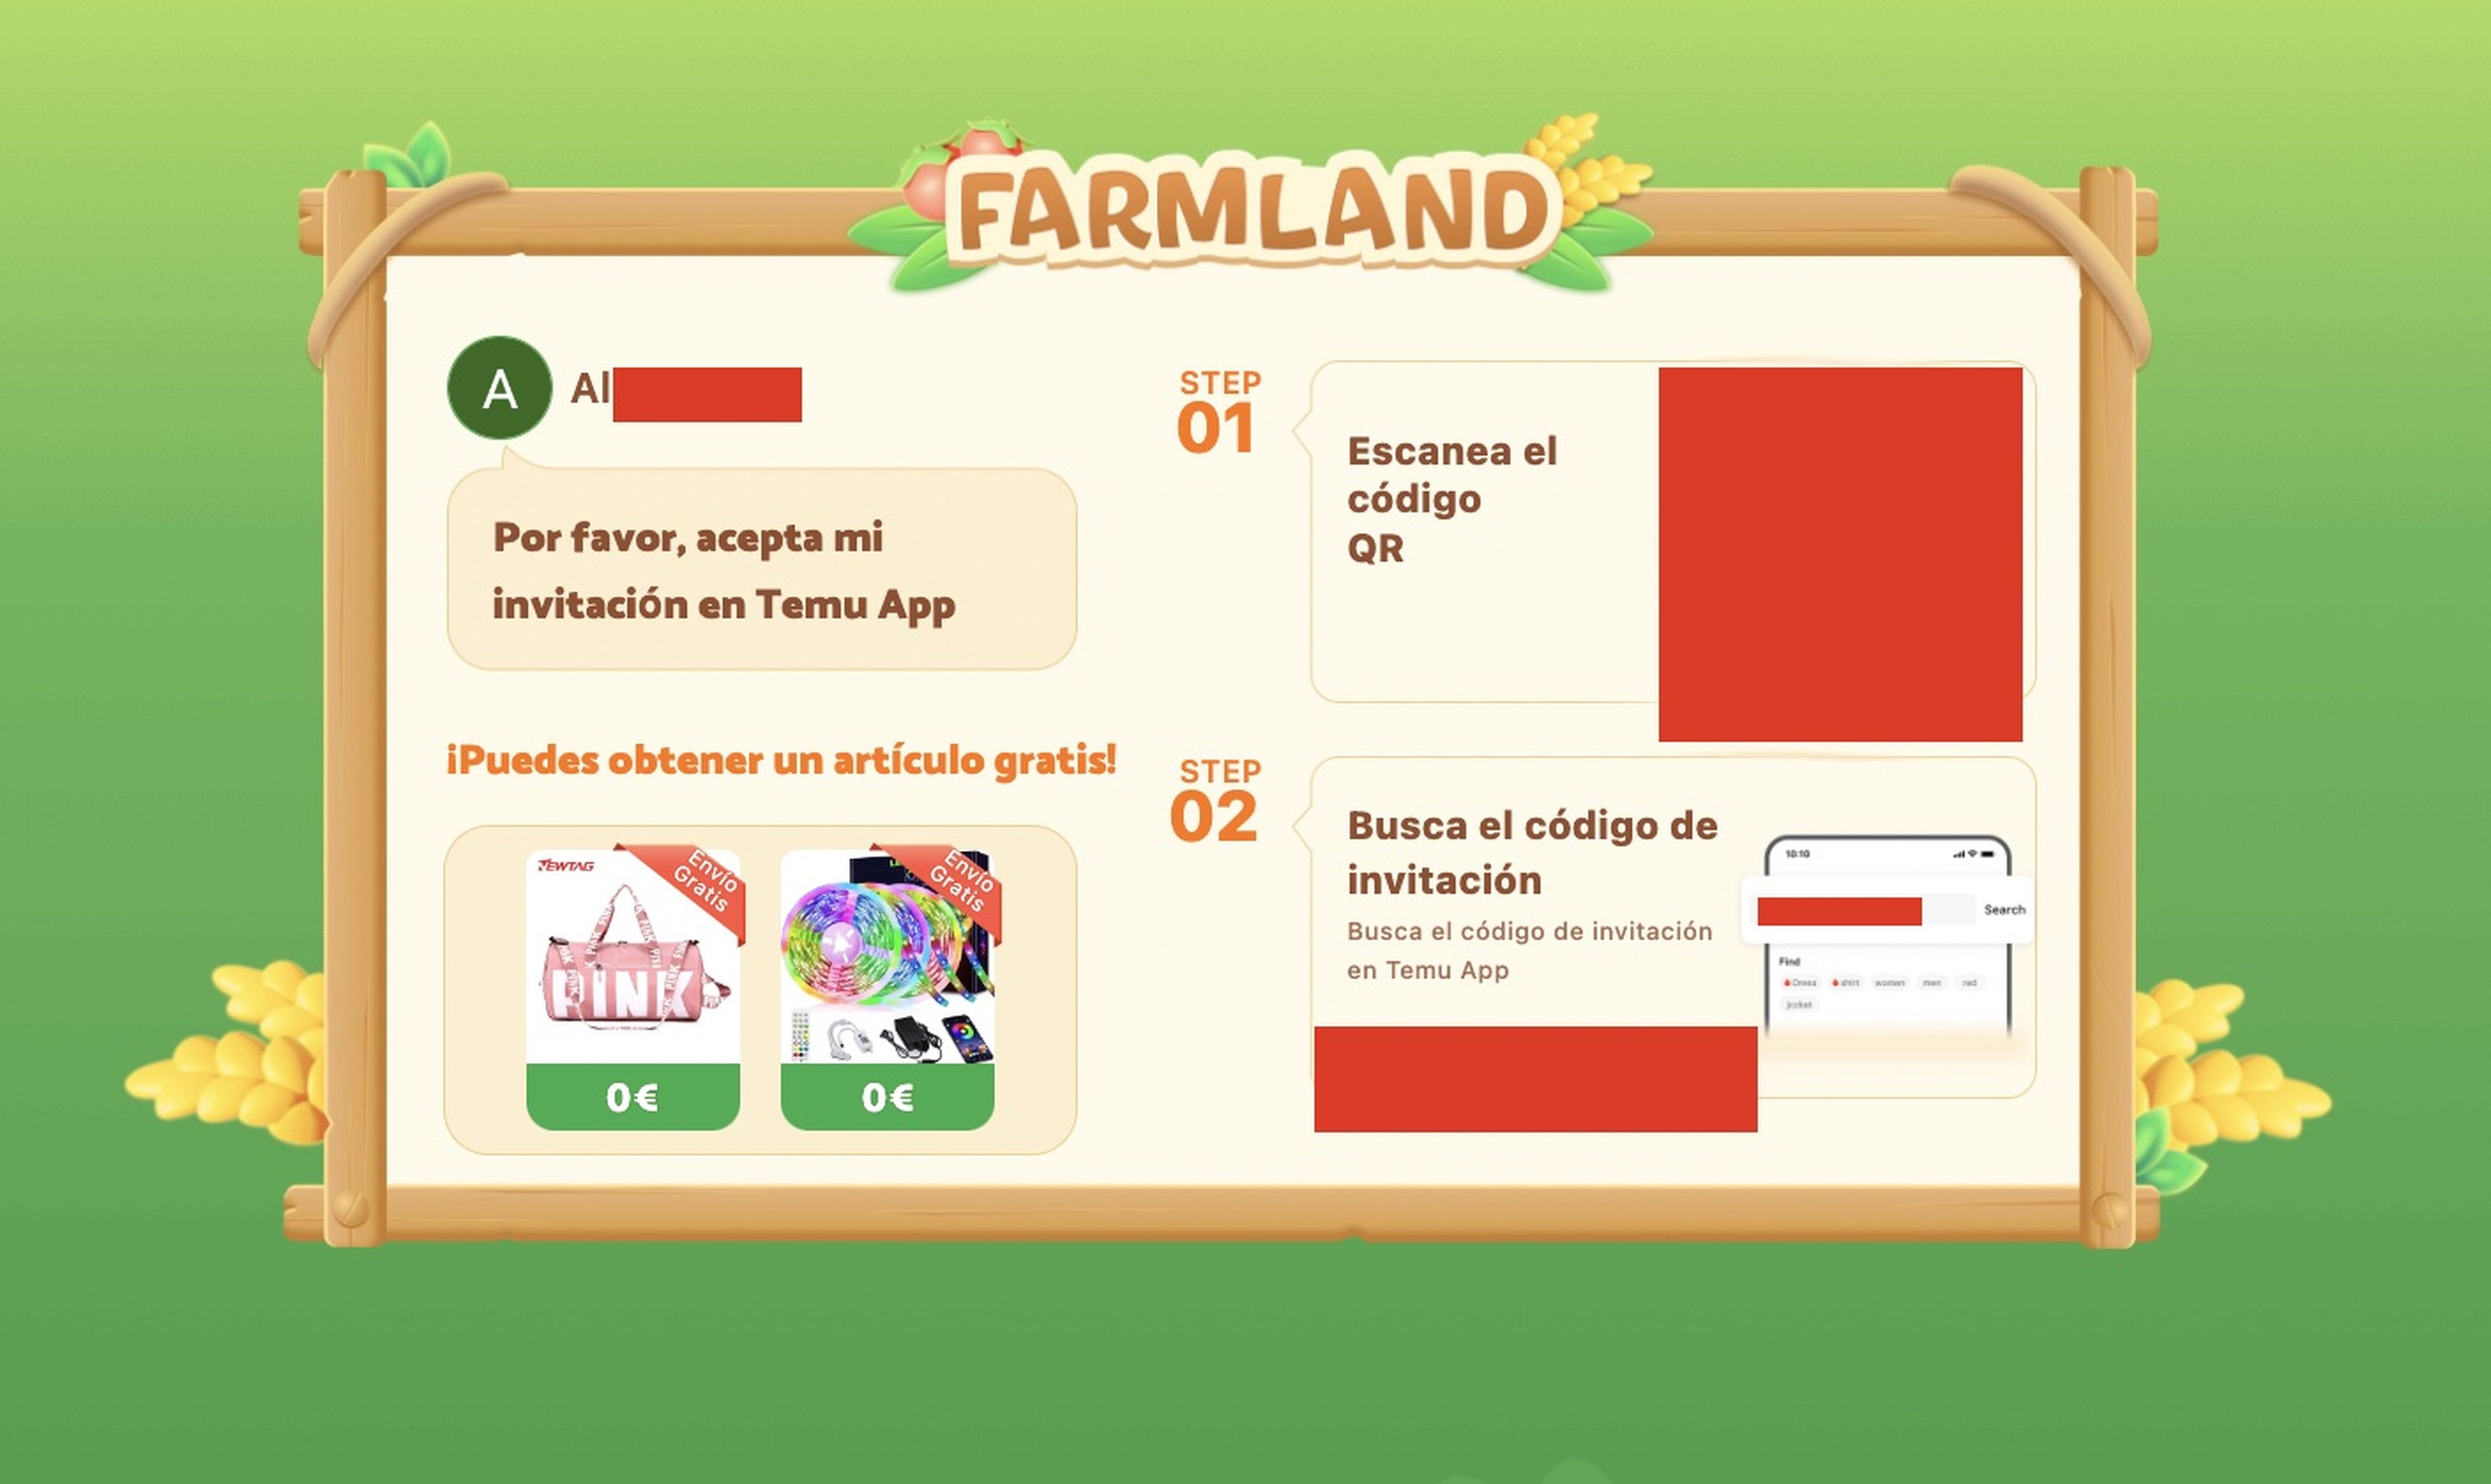 Invitación que reciben los usuarios de sus contactos para acceder a Farmland.